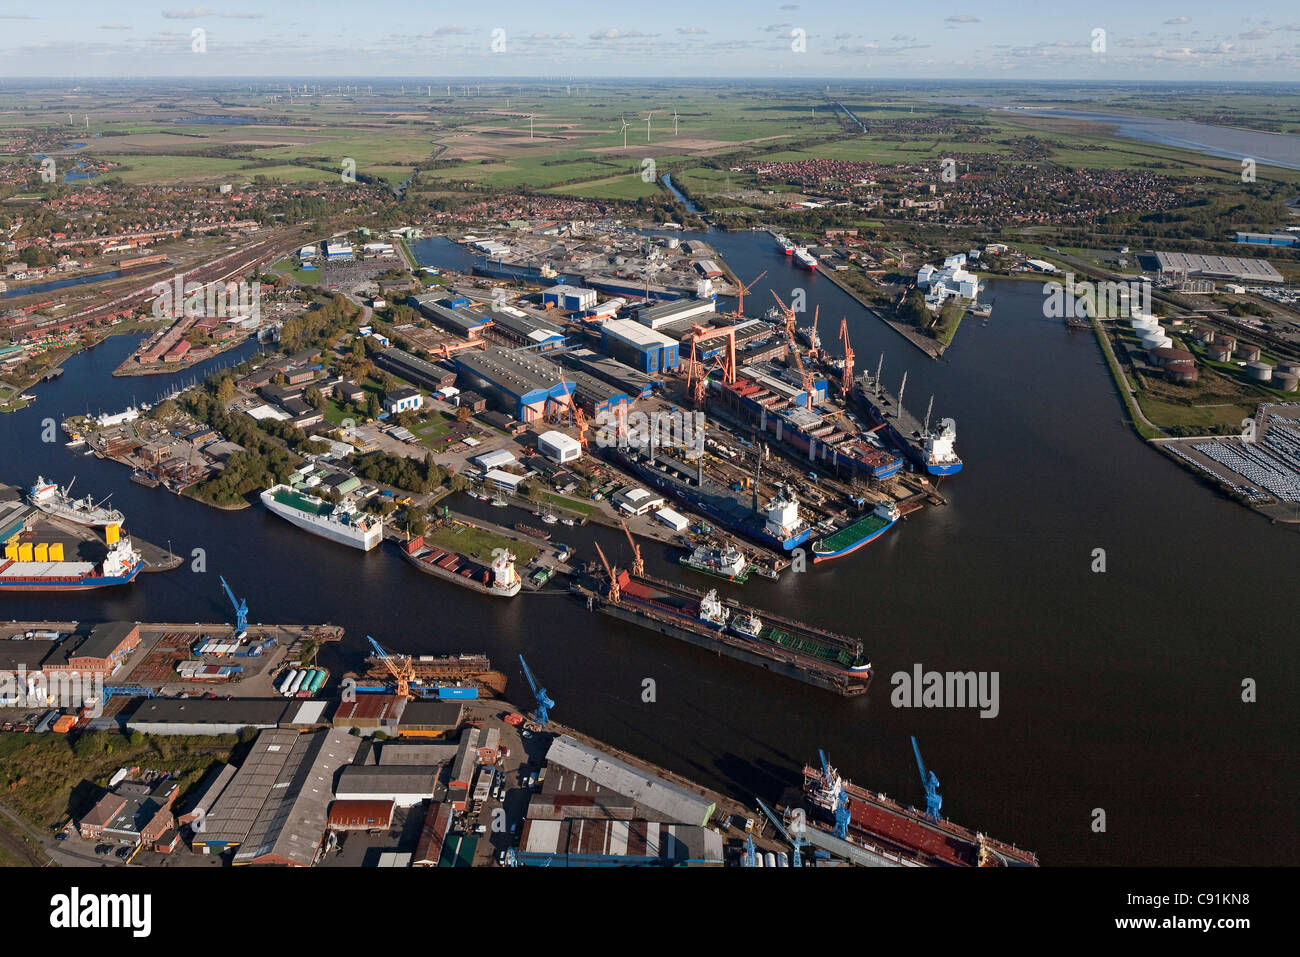 Vue aérienne du port d'Emden avec les quais et les quais, l'Emden, Basse-Saxe, Allemagne Banque D'Images